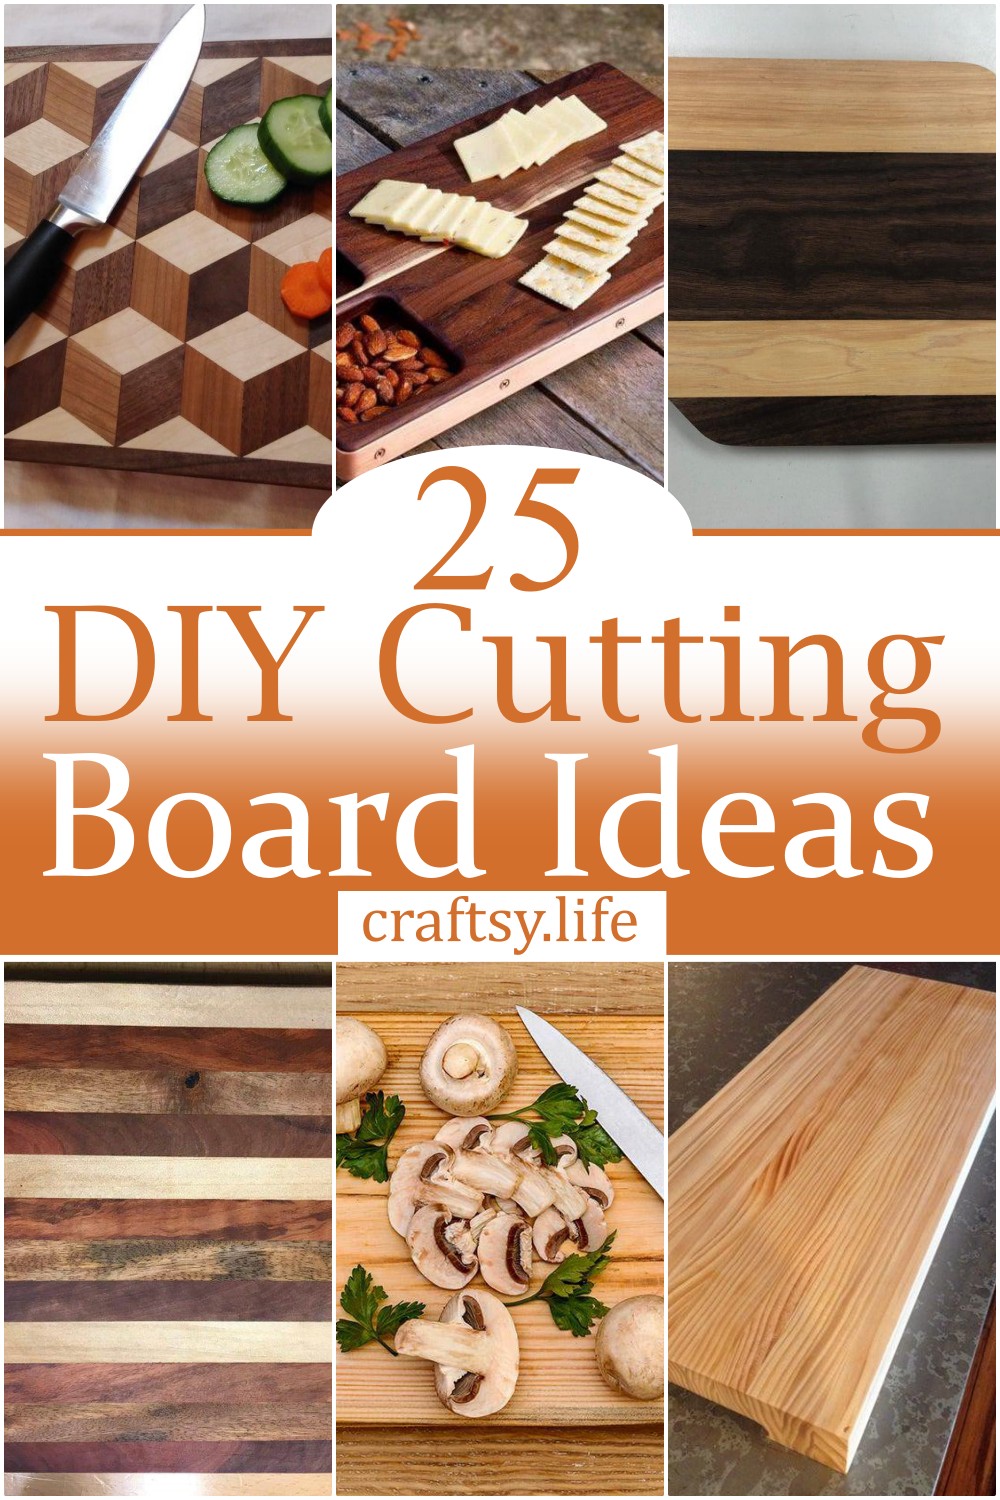 DIY Cutting Board Ideas 1